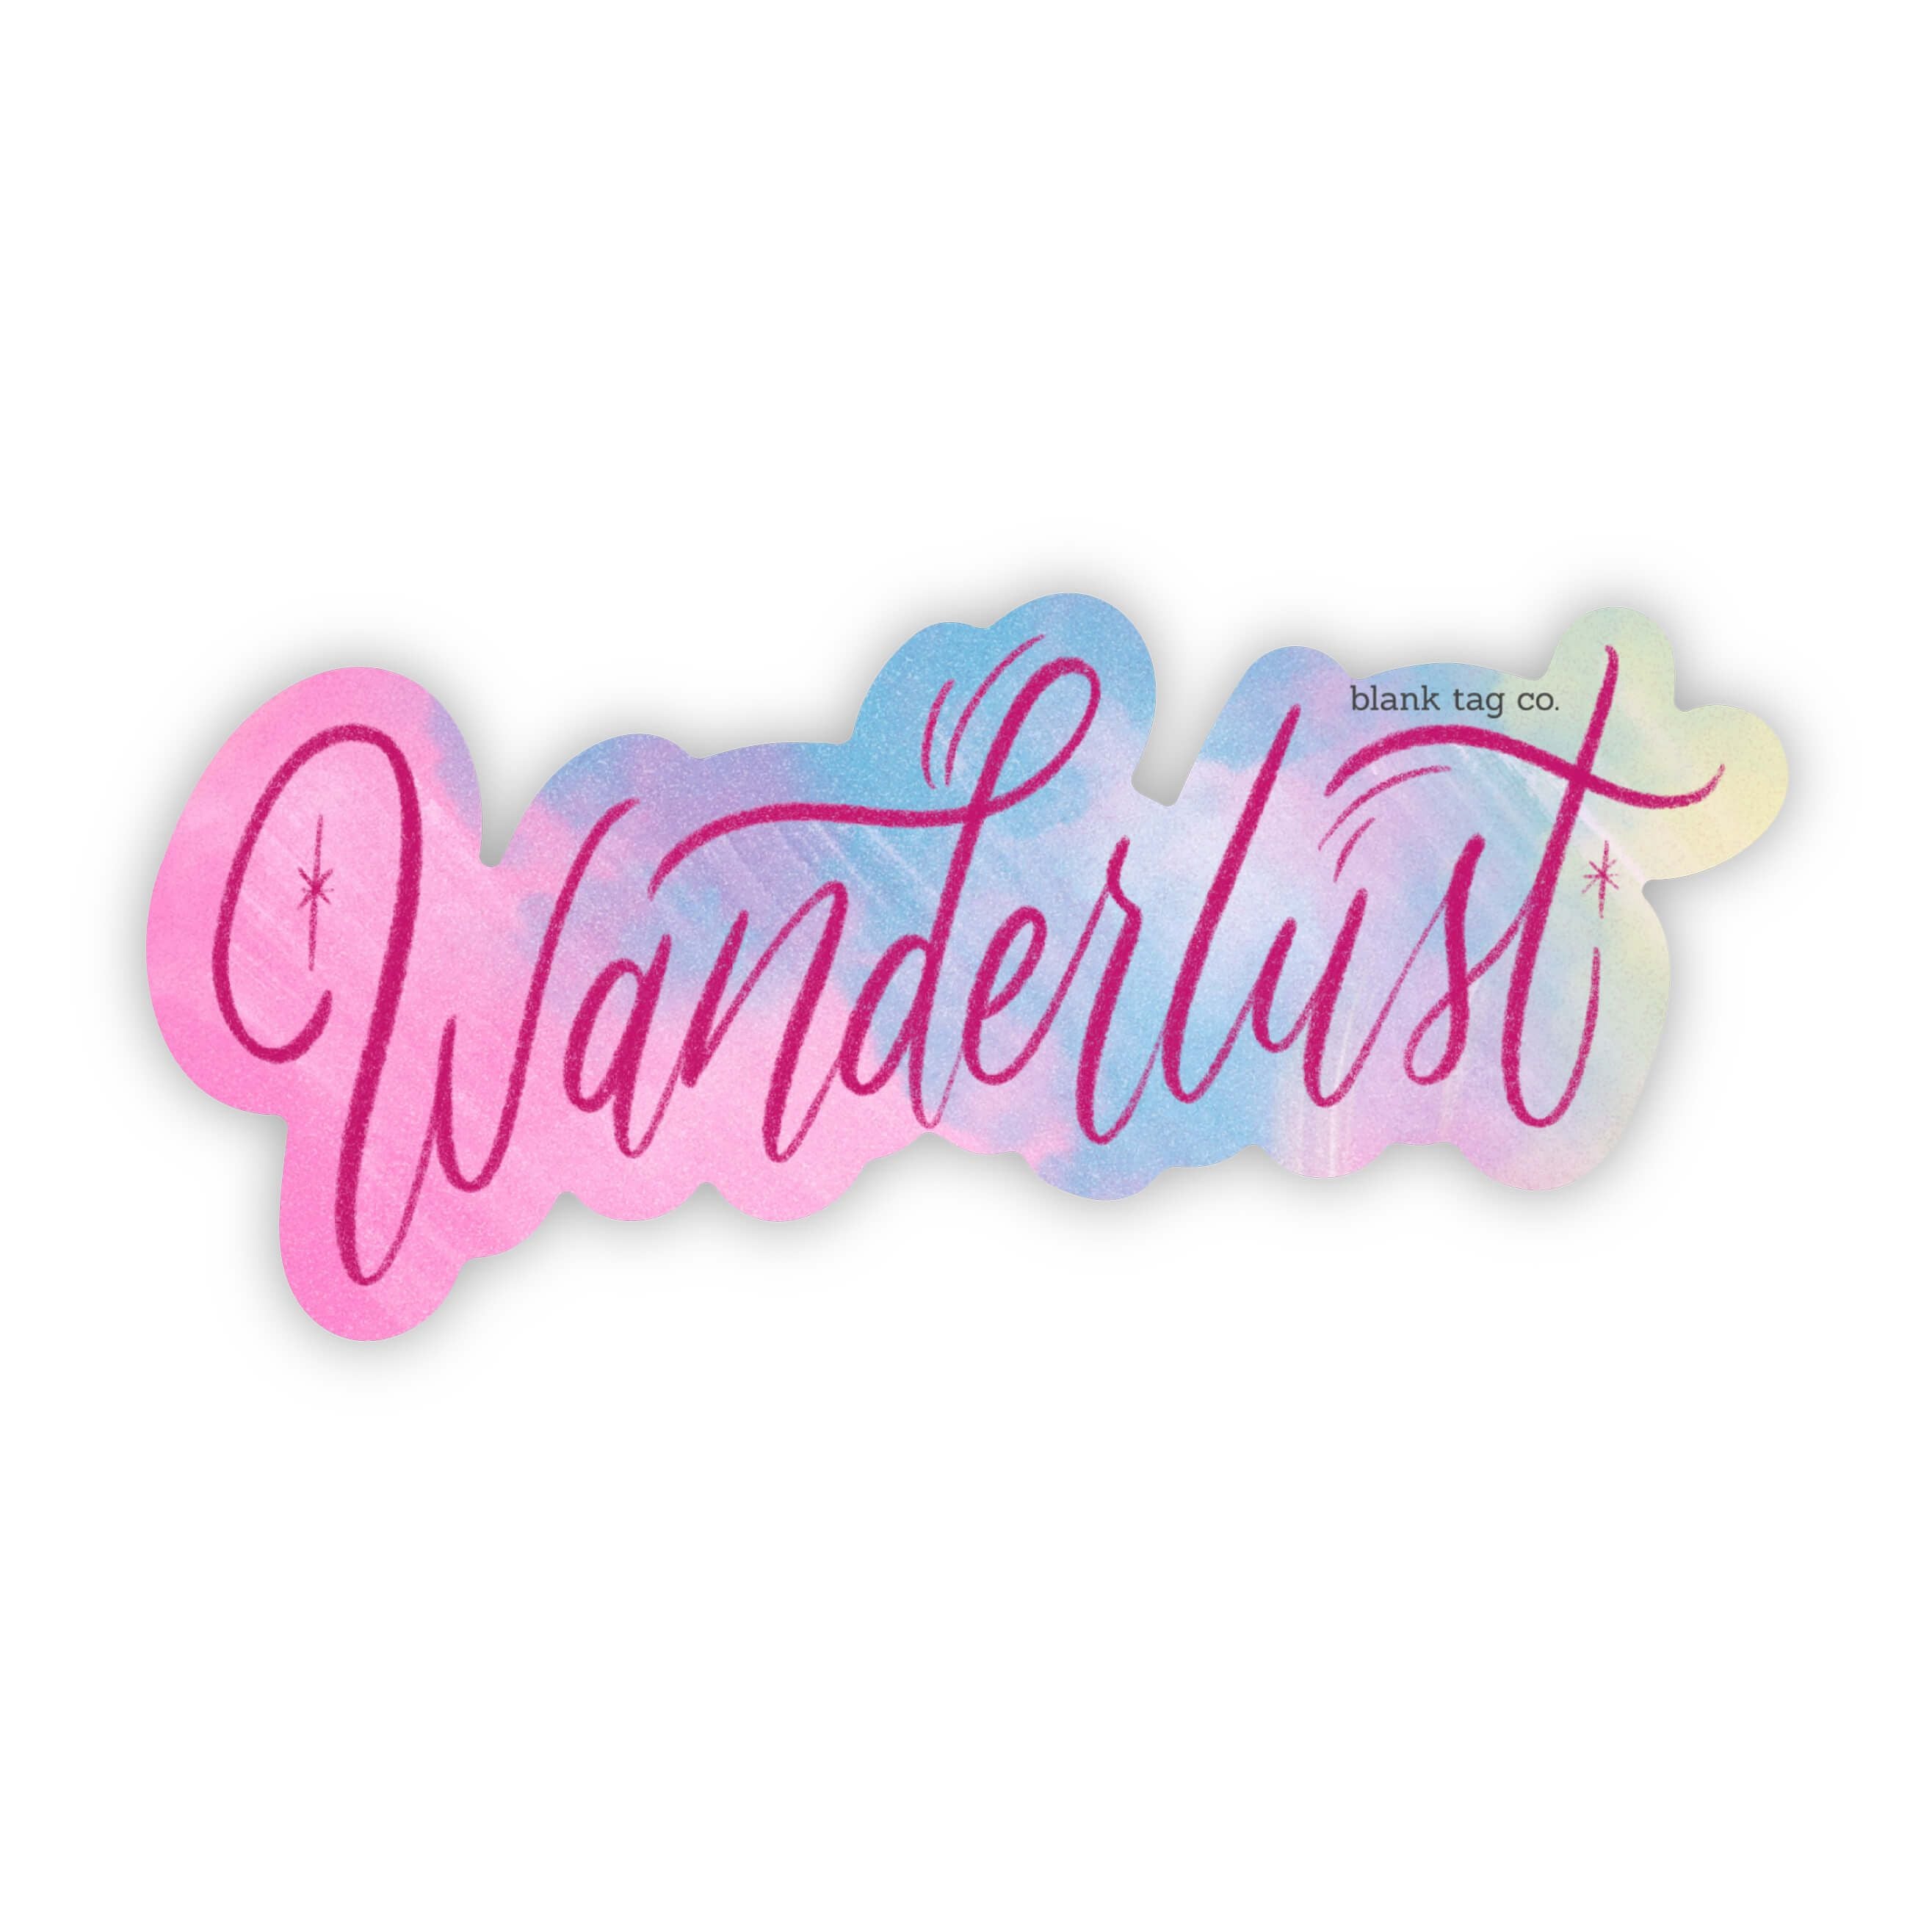 The Wanderlust Sticker